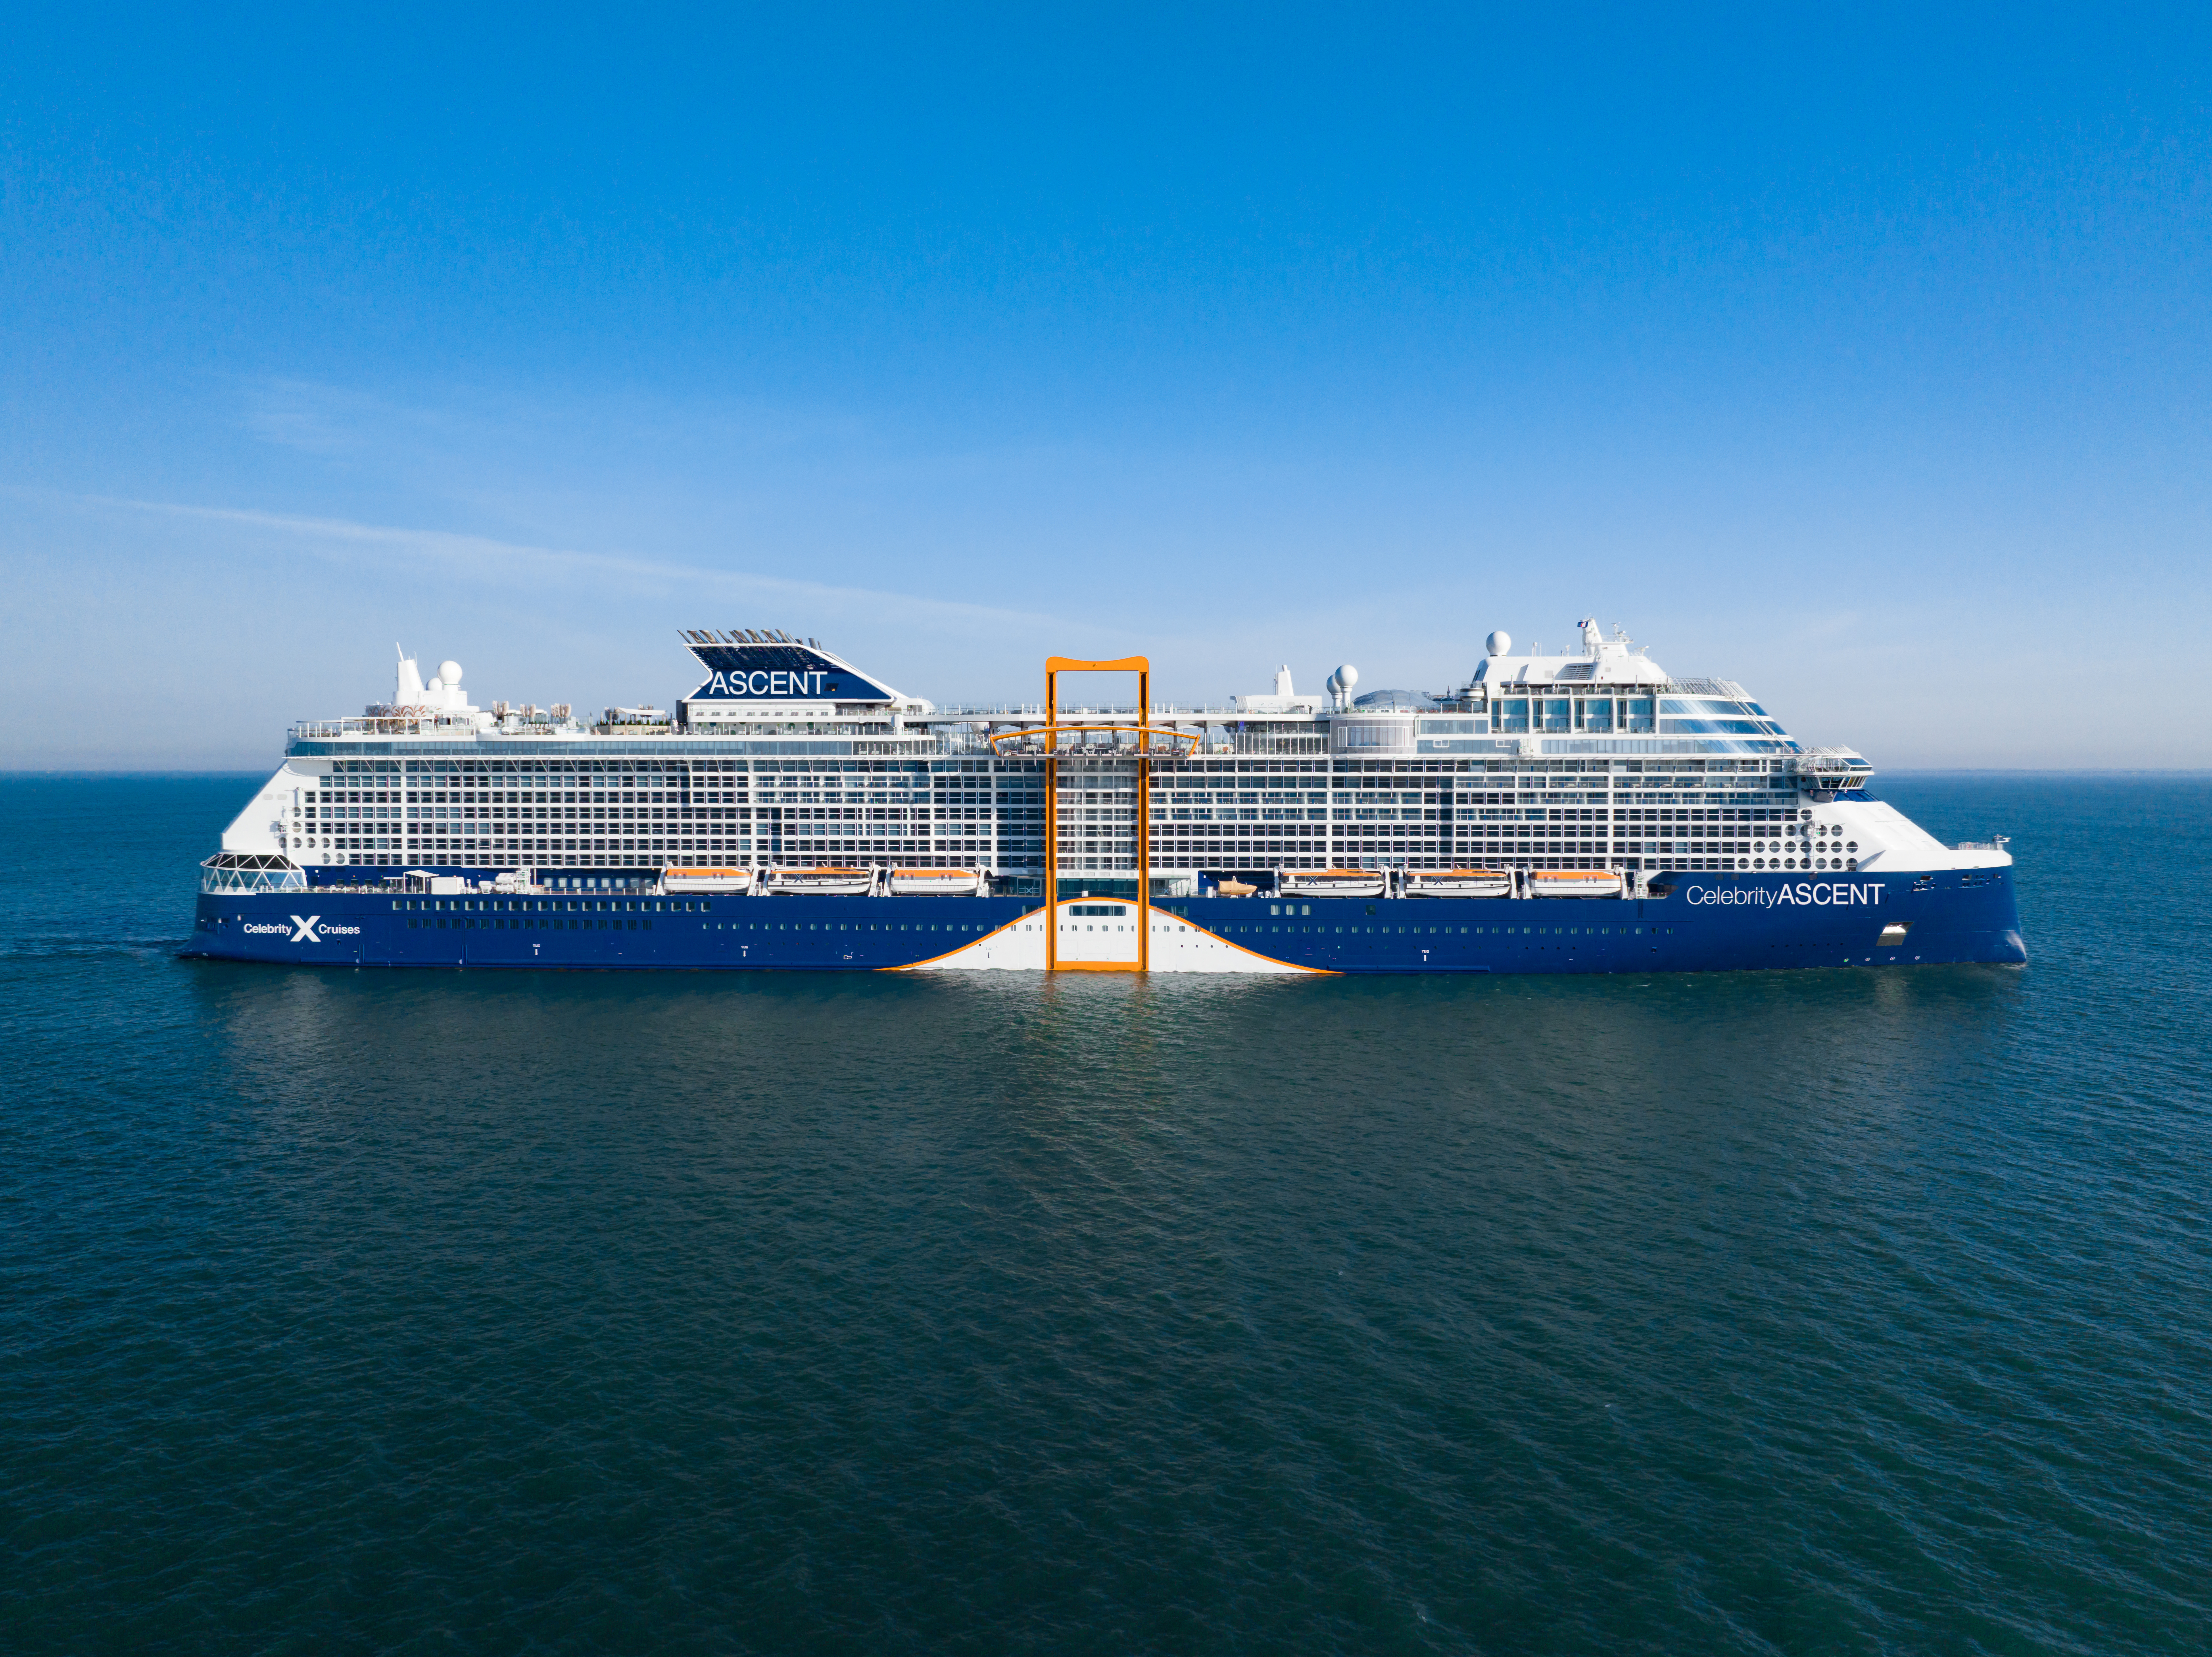 Kiderült, hogy melyik a világ legjobb tengerjáró vállalata: elképesztő luxus a Celebrity Cruises fedélzetén